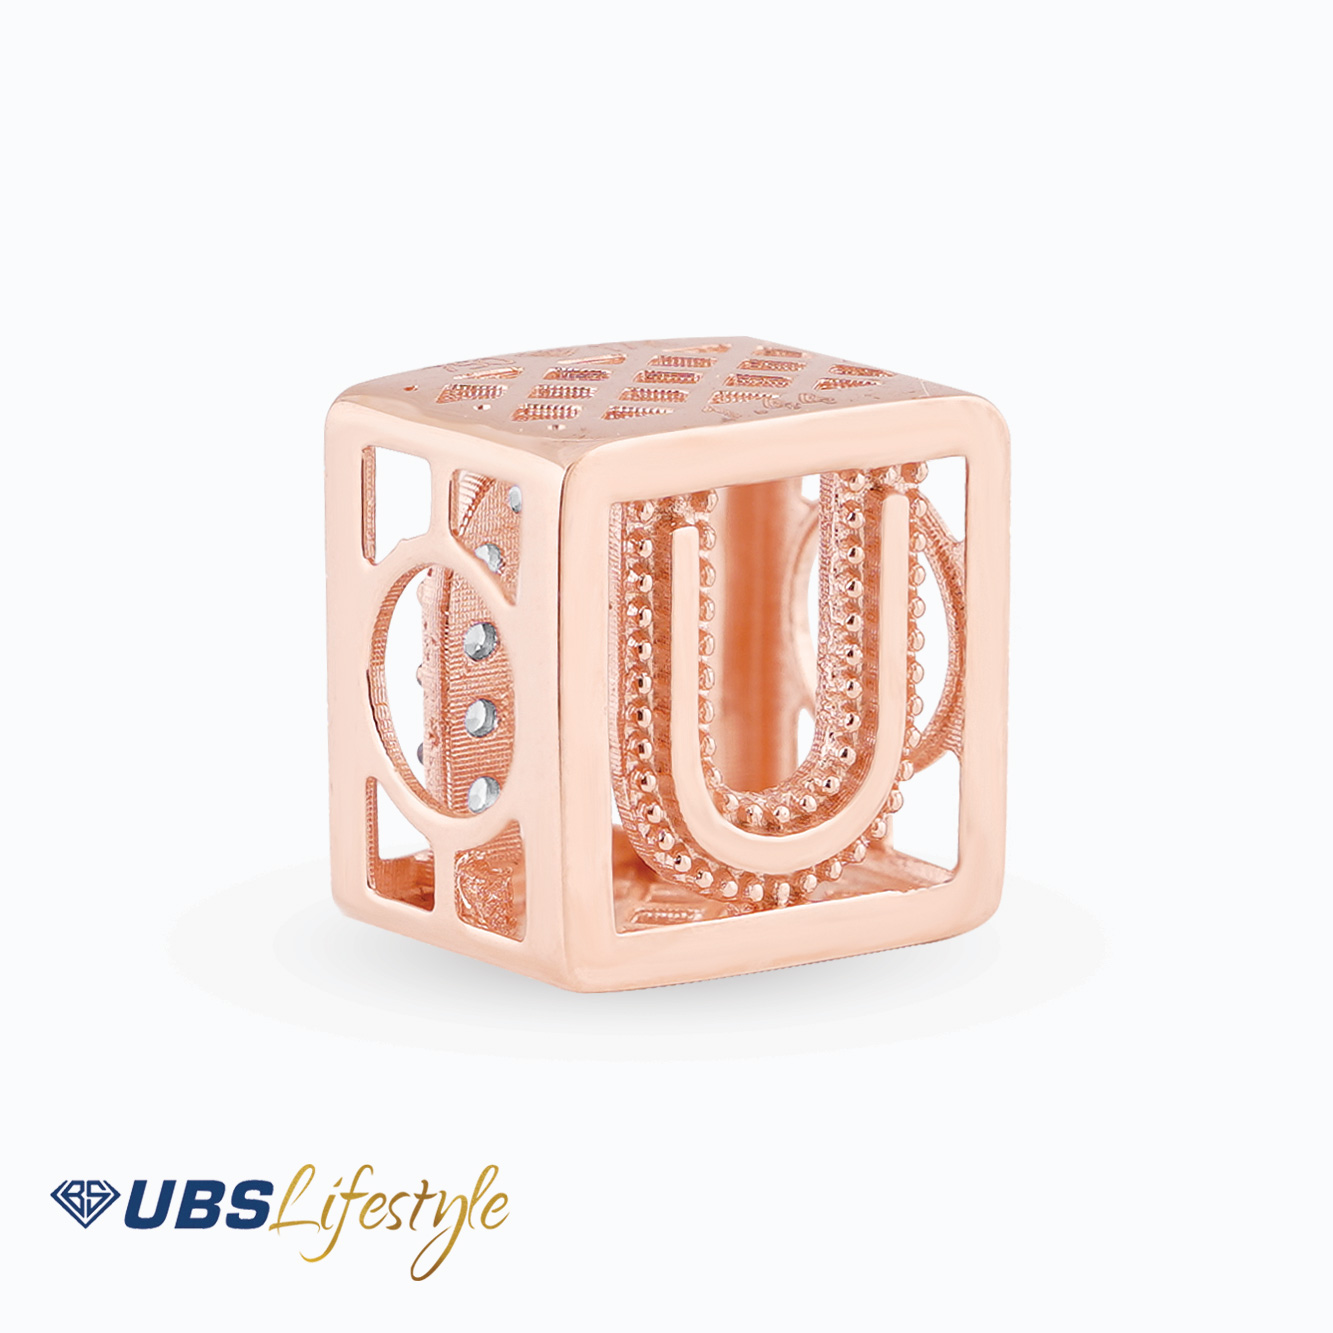 UBS Liontin Emas Carendelano Alpha Cube U - Cdm0146R - 17K